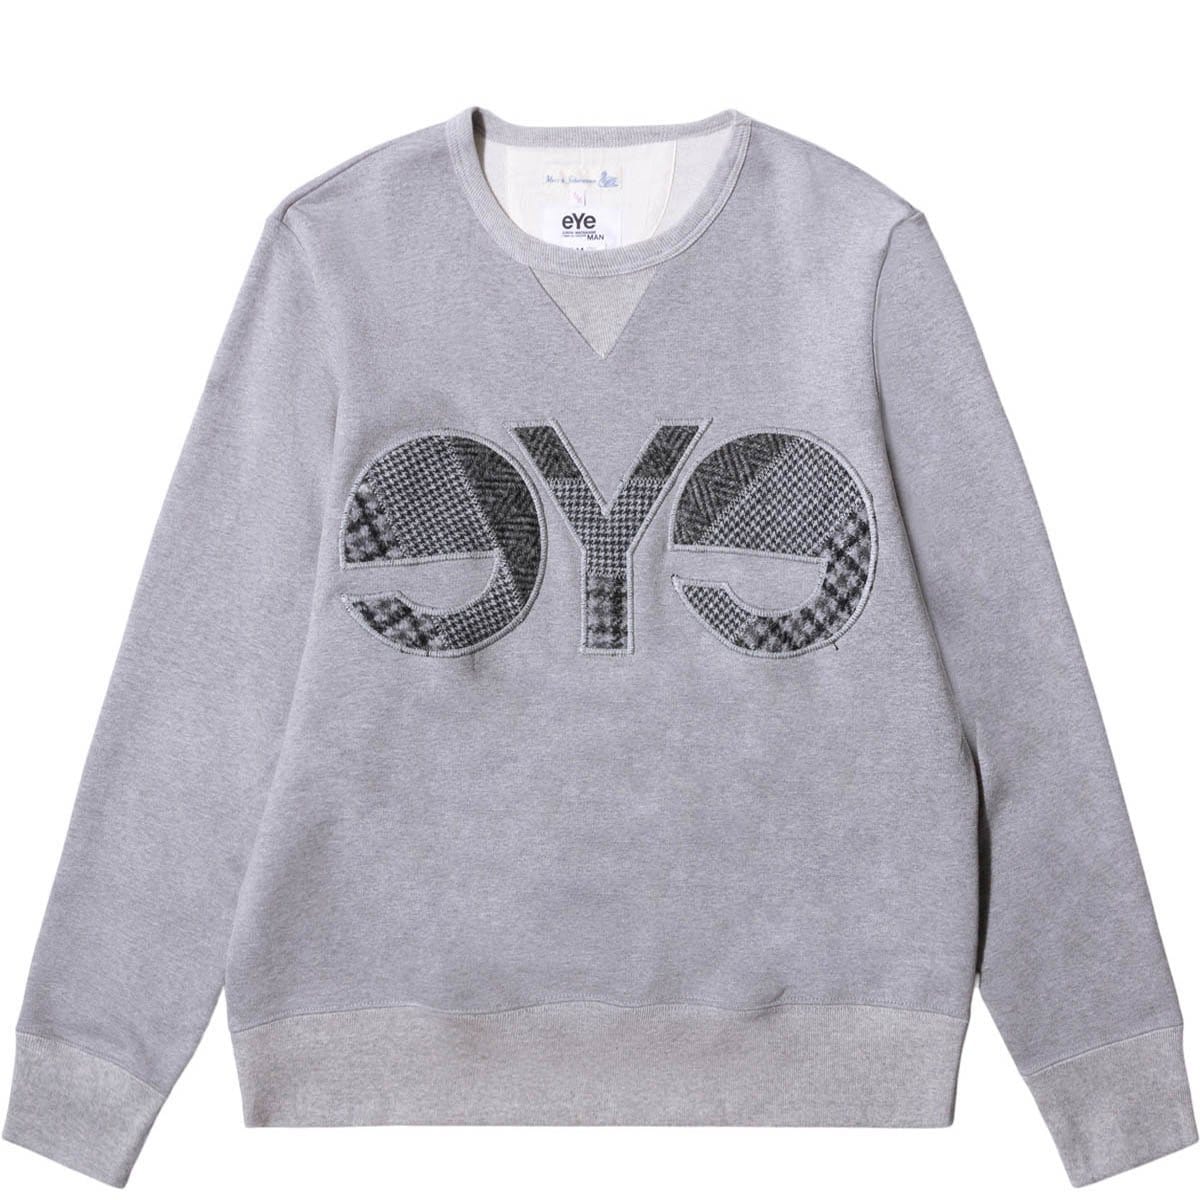 Junya Watanabe Hoodies & Sweatshirts CREWNECK